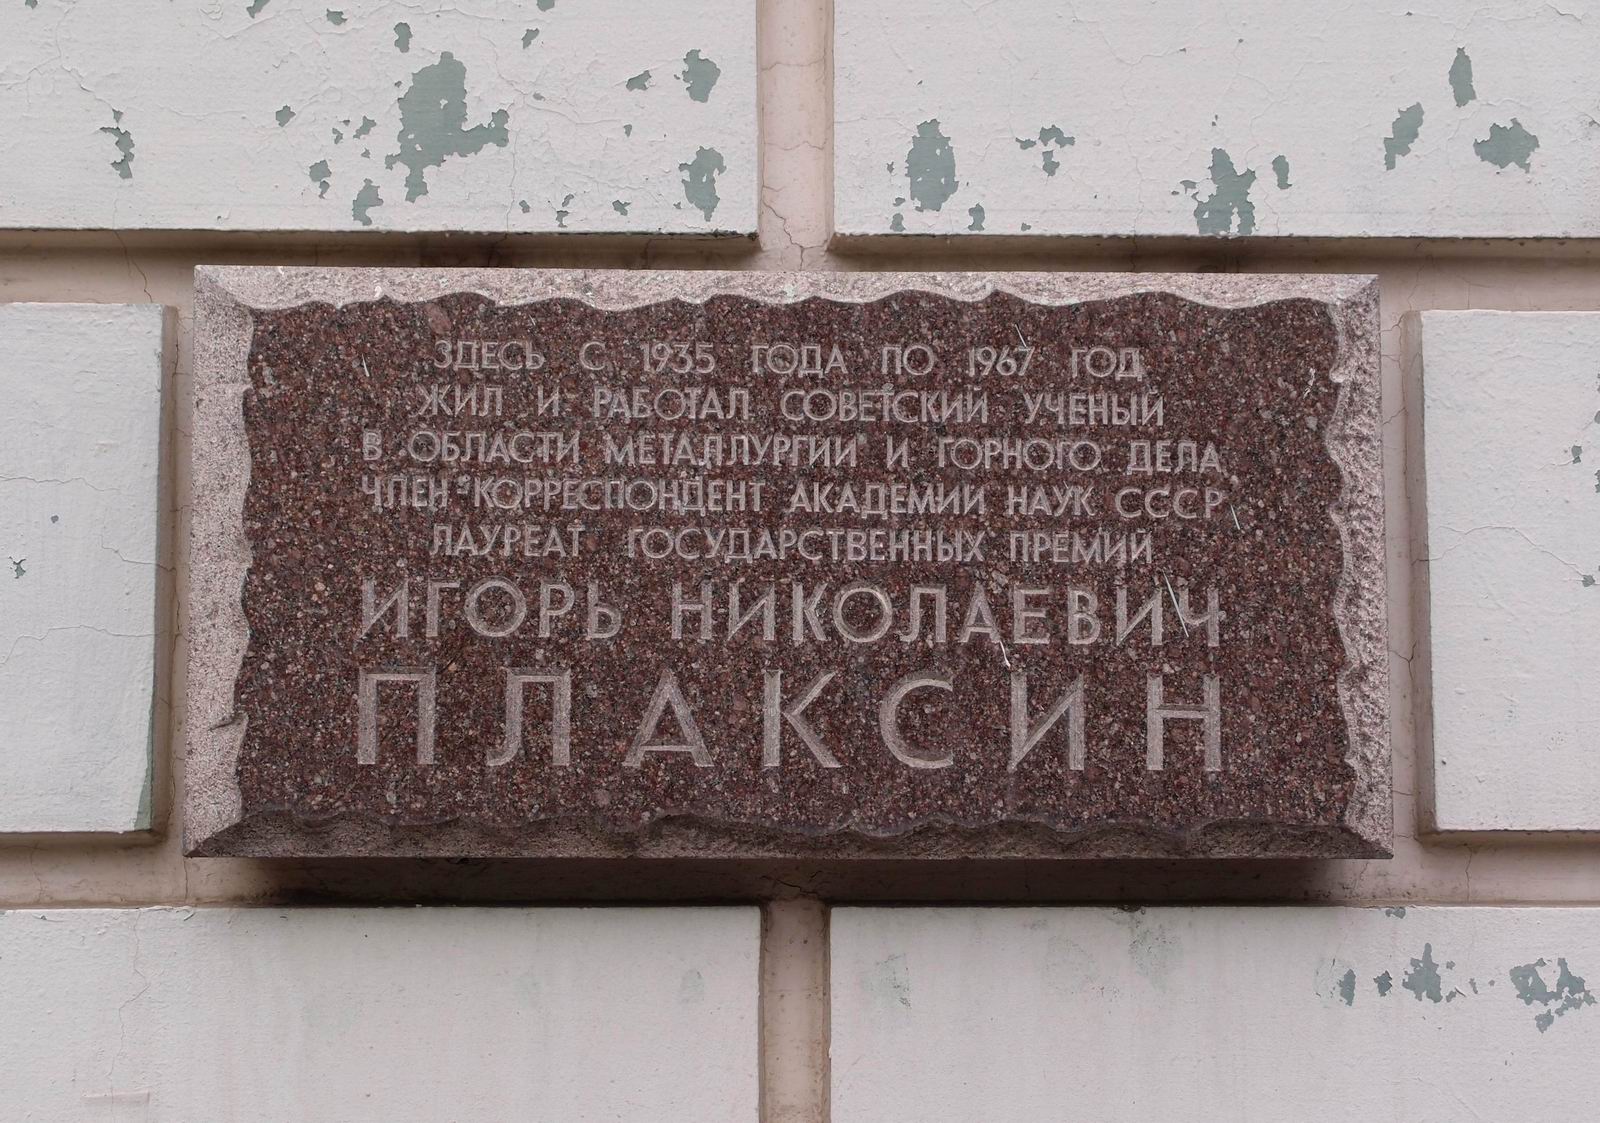 Мемориальная доска Плаксину И.Н. (1900–1967), арх. А.П.Малков, в Старомонетном переулке, дом 33, открыта 9.7.1982.